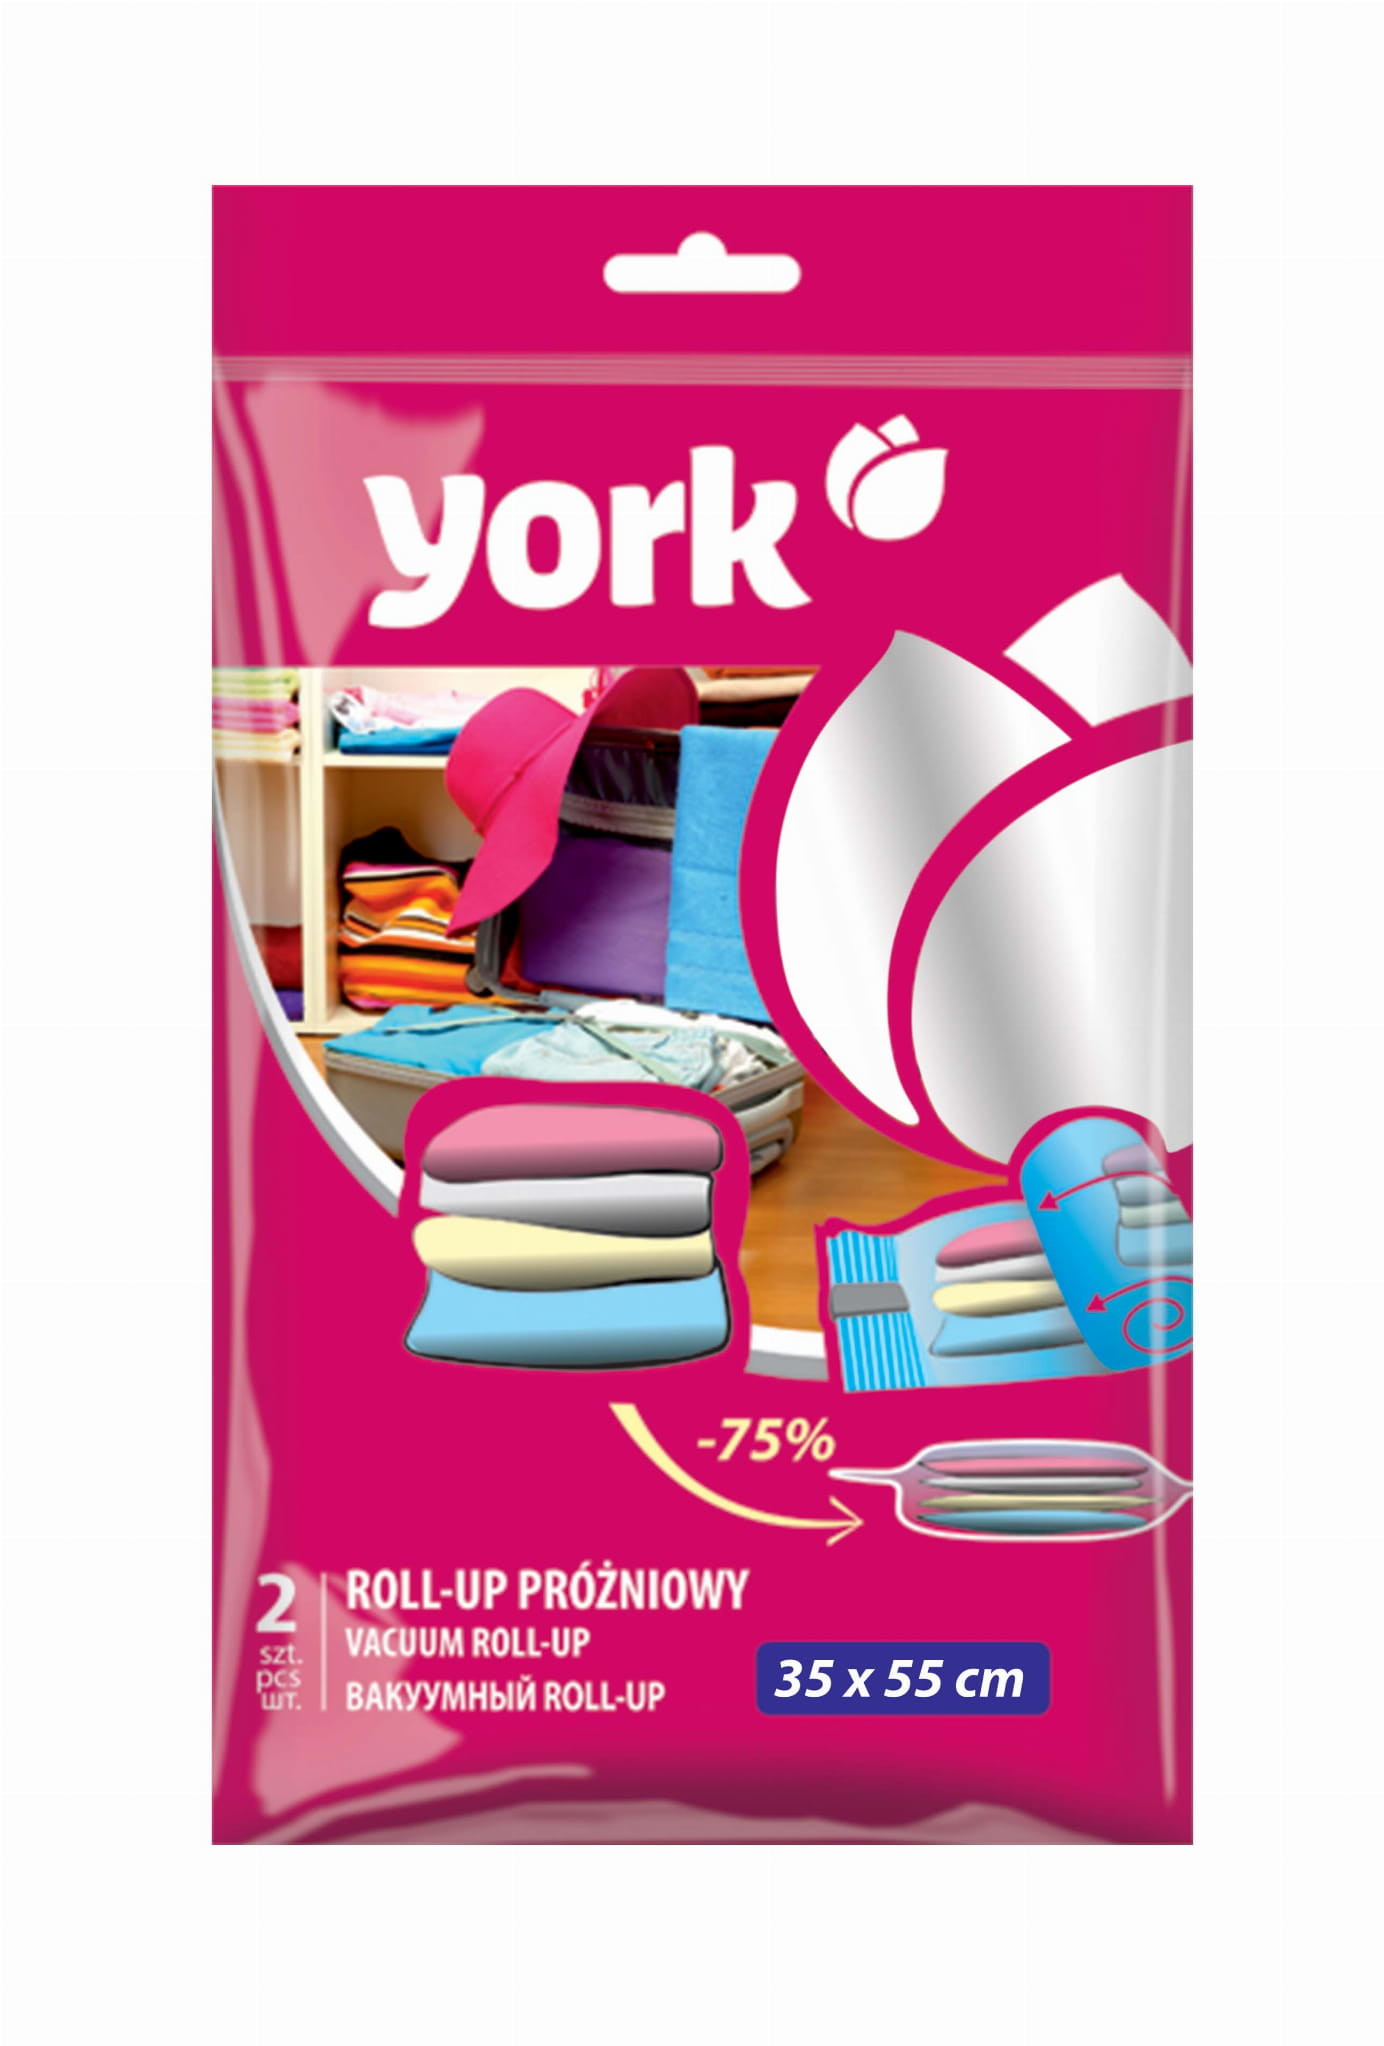 York Roll-up próżniowy 2 szt 35x55 cm) oficjalny sklep internetowy rollup-prozniowy